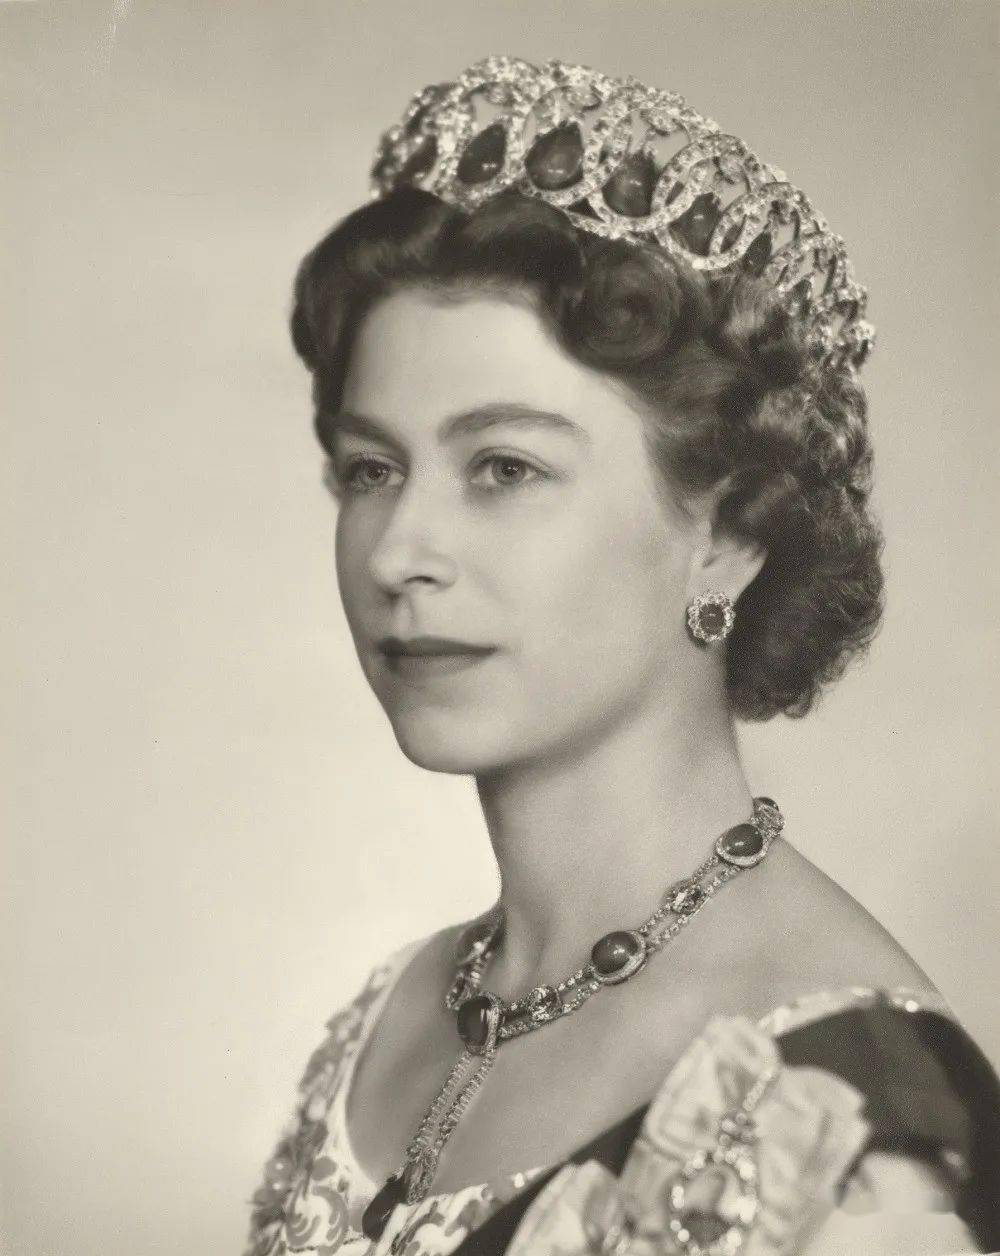 英国女王伊丽莎白二世与世长辞,优雅姿态与瑰丽藏品永存世间!